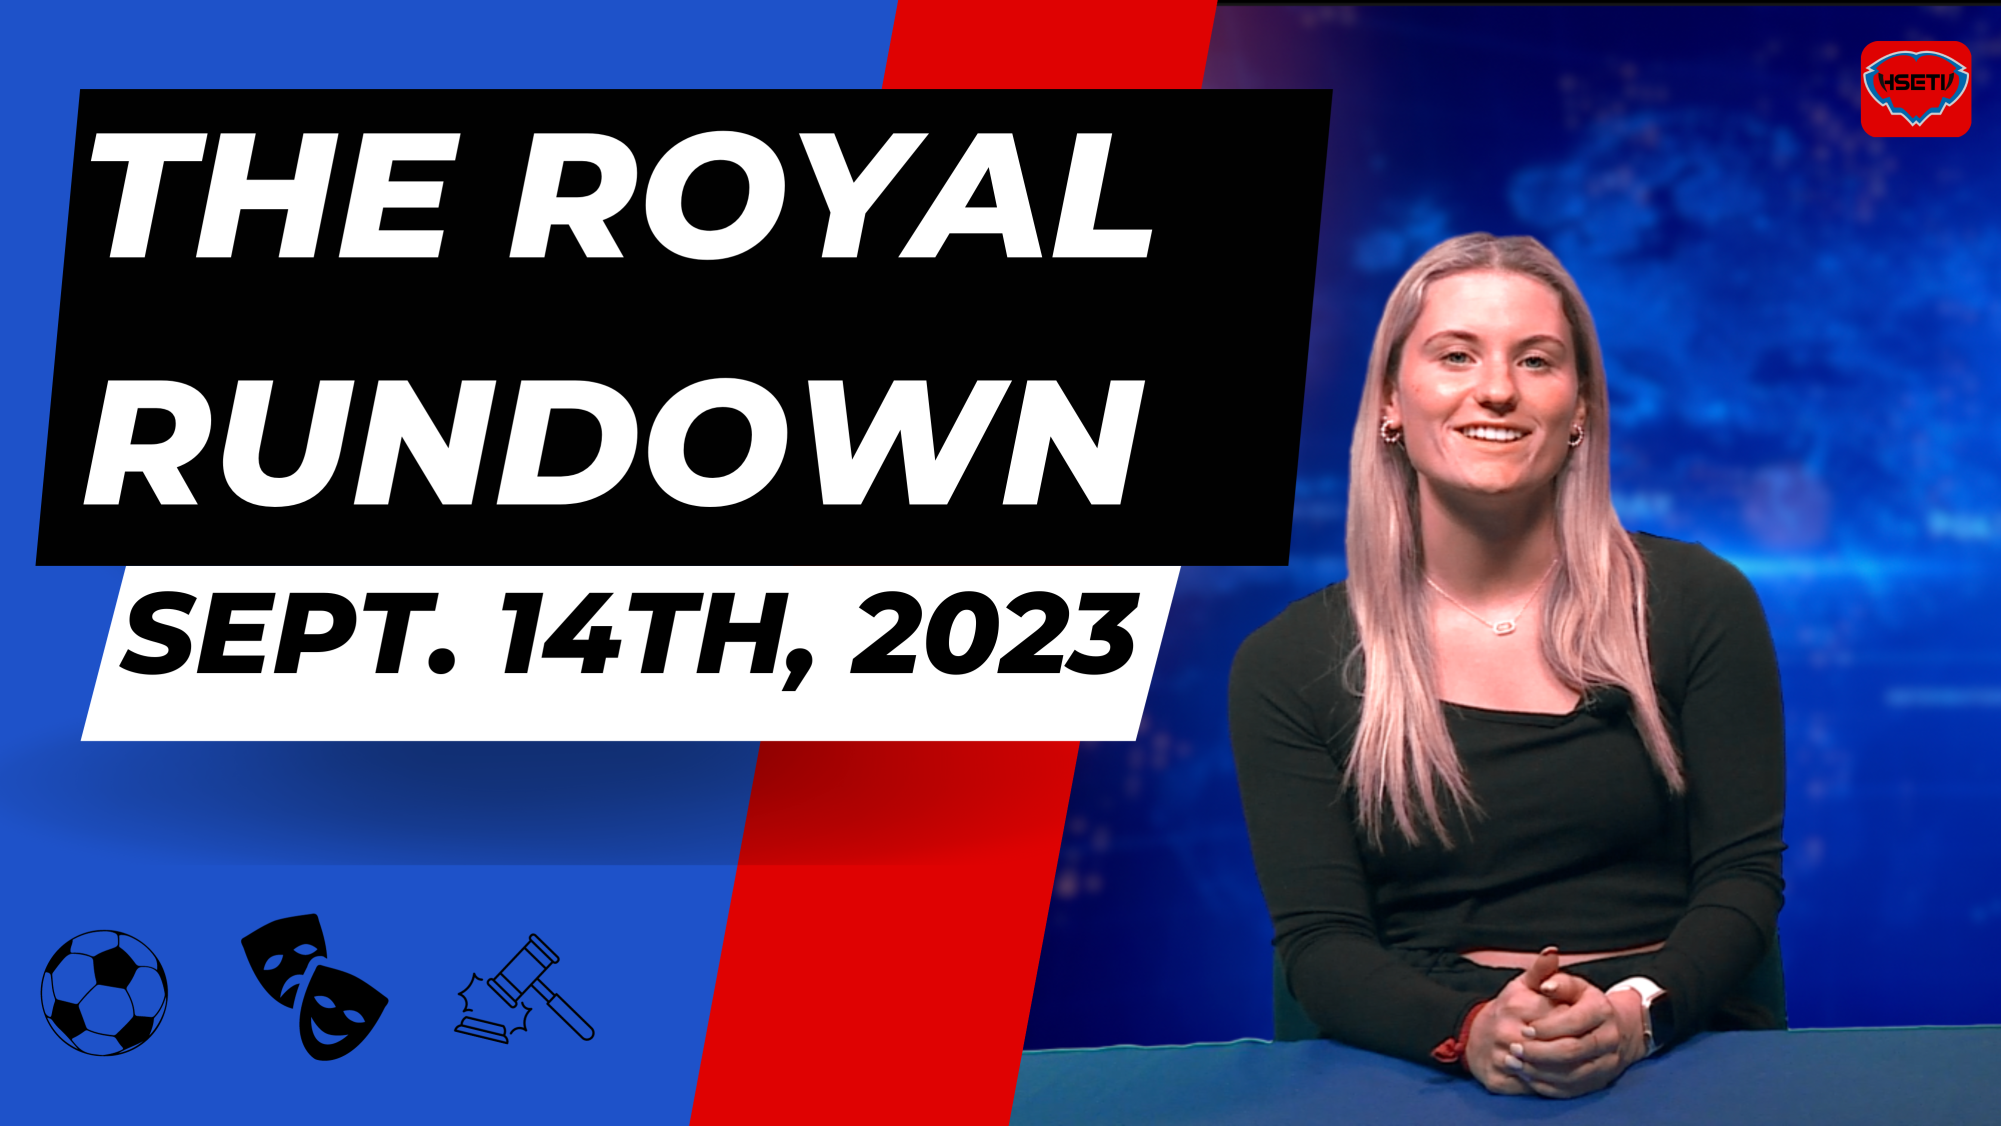 The Royal Rundown: September 14th, 2023